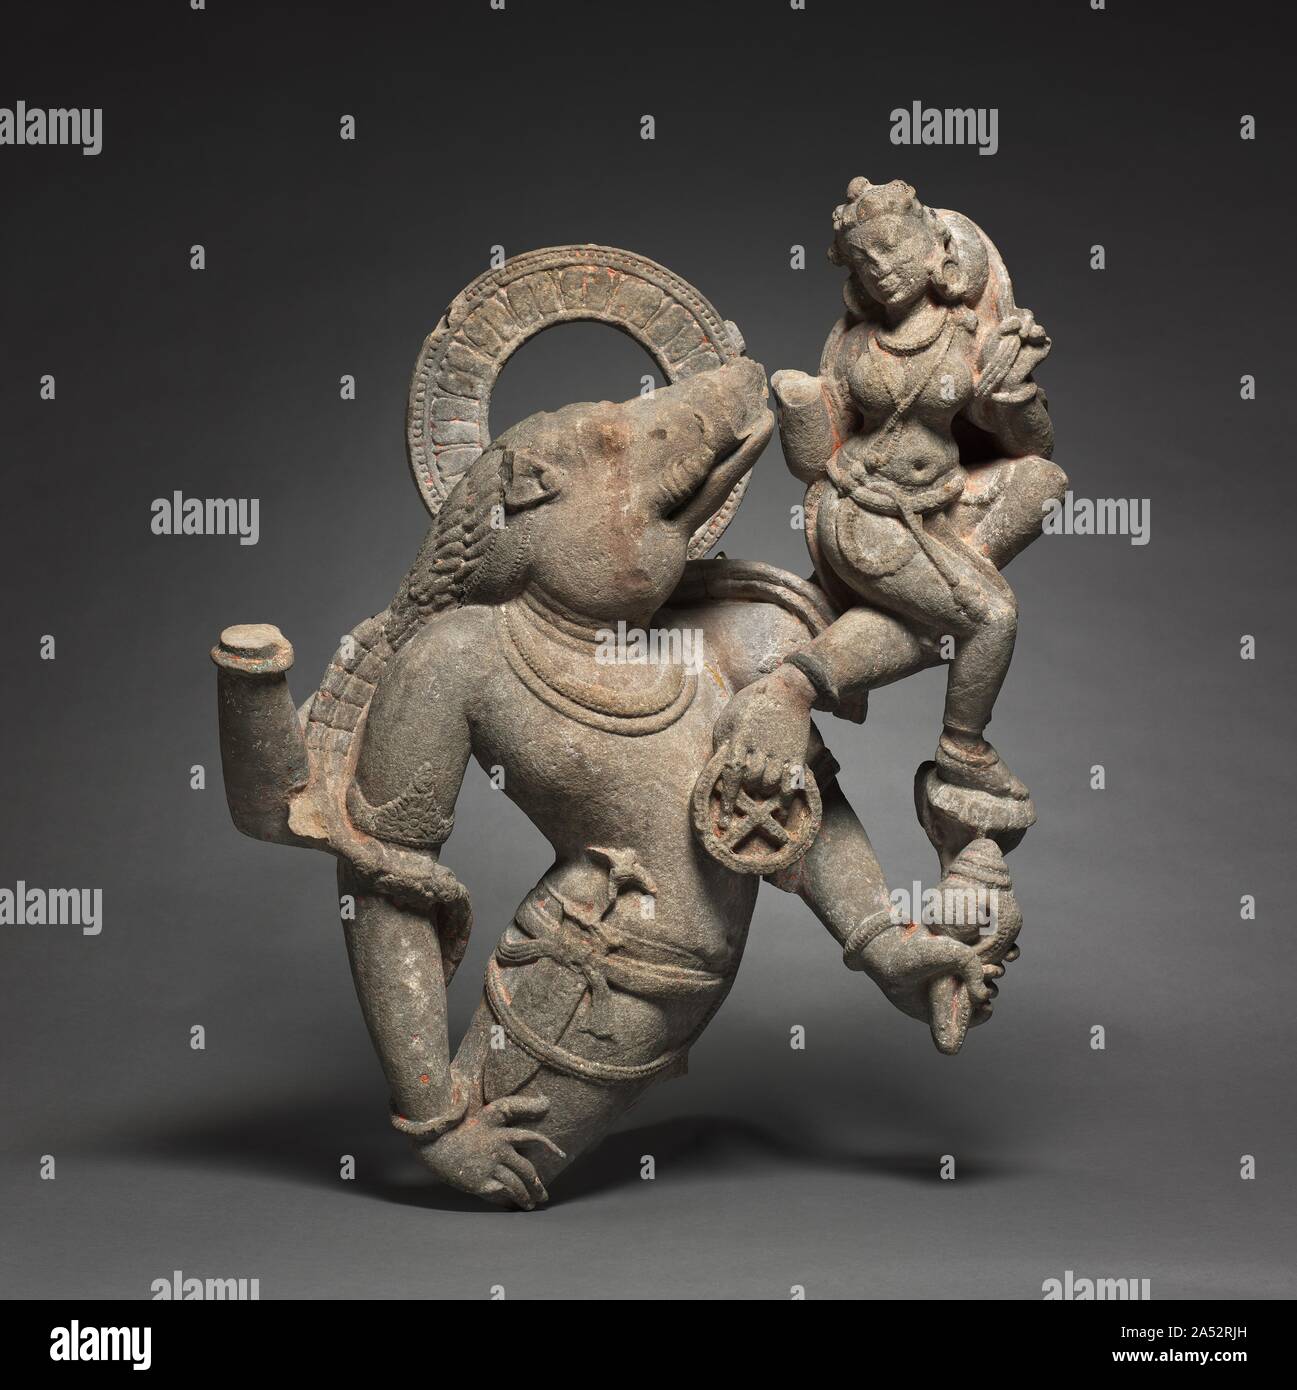 Vahara, Wildschwein Inkarnation von Vishnu, 700-800 n. In den Mythos des Vishnu Wildschwein Inkarnation, oder Avatar, ein Dämon versteckte die Erde am Boden des Urmeeres. Der Gott nahm die Gestalt eines Ebers (Varaha) und rettete sie. Auch mit seinen Beinen fehlt, diese Skulptur vermittelt die leistungsstarke Ausfallschritt von seinen Körper, als er die Erde in Sicherheit bringt. Da die Göttin Bhu, einer der beiden Vishnu Frauen verkörpert, sie nicht hilflos erscheint; auf seiner erhobenen Winkelstück thront, kehrt sie seine bewundernden Blick. Dieses Bild war beliebt bei den Königen von Indien, die erscheint es als eine Metapher für die eigene Eroberung o angeeignet zu haben Stockfoto